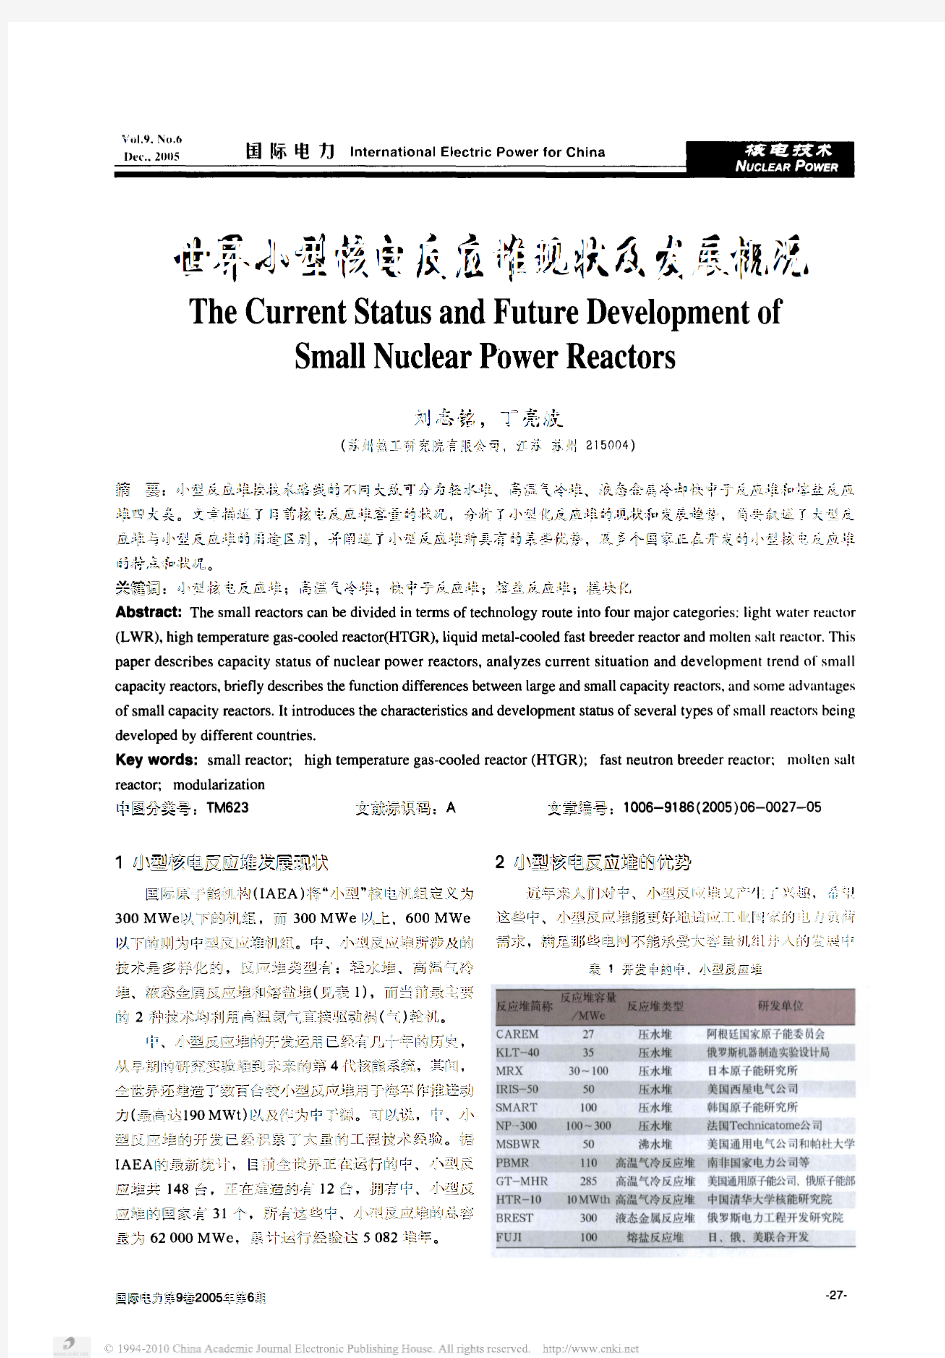 世界小型核电反应堆现状及发展概况